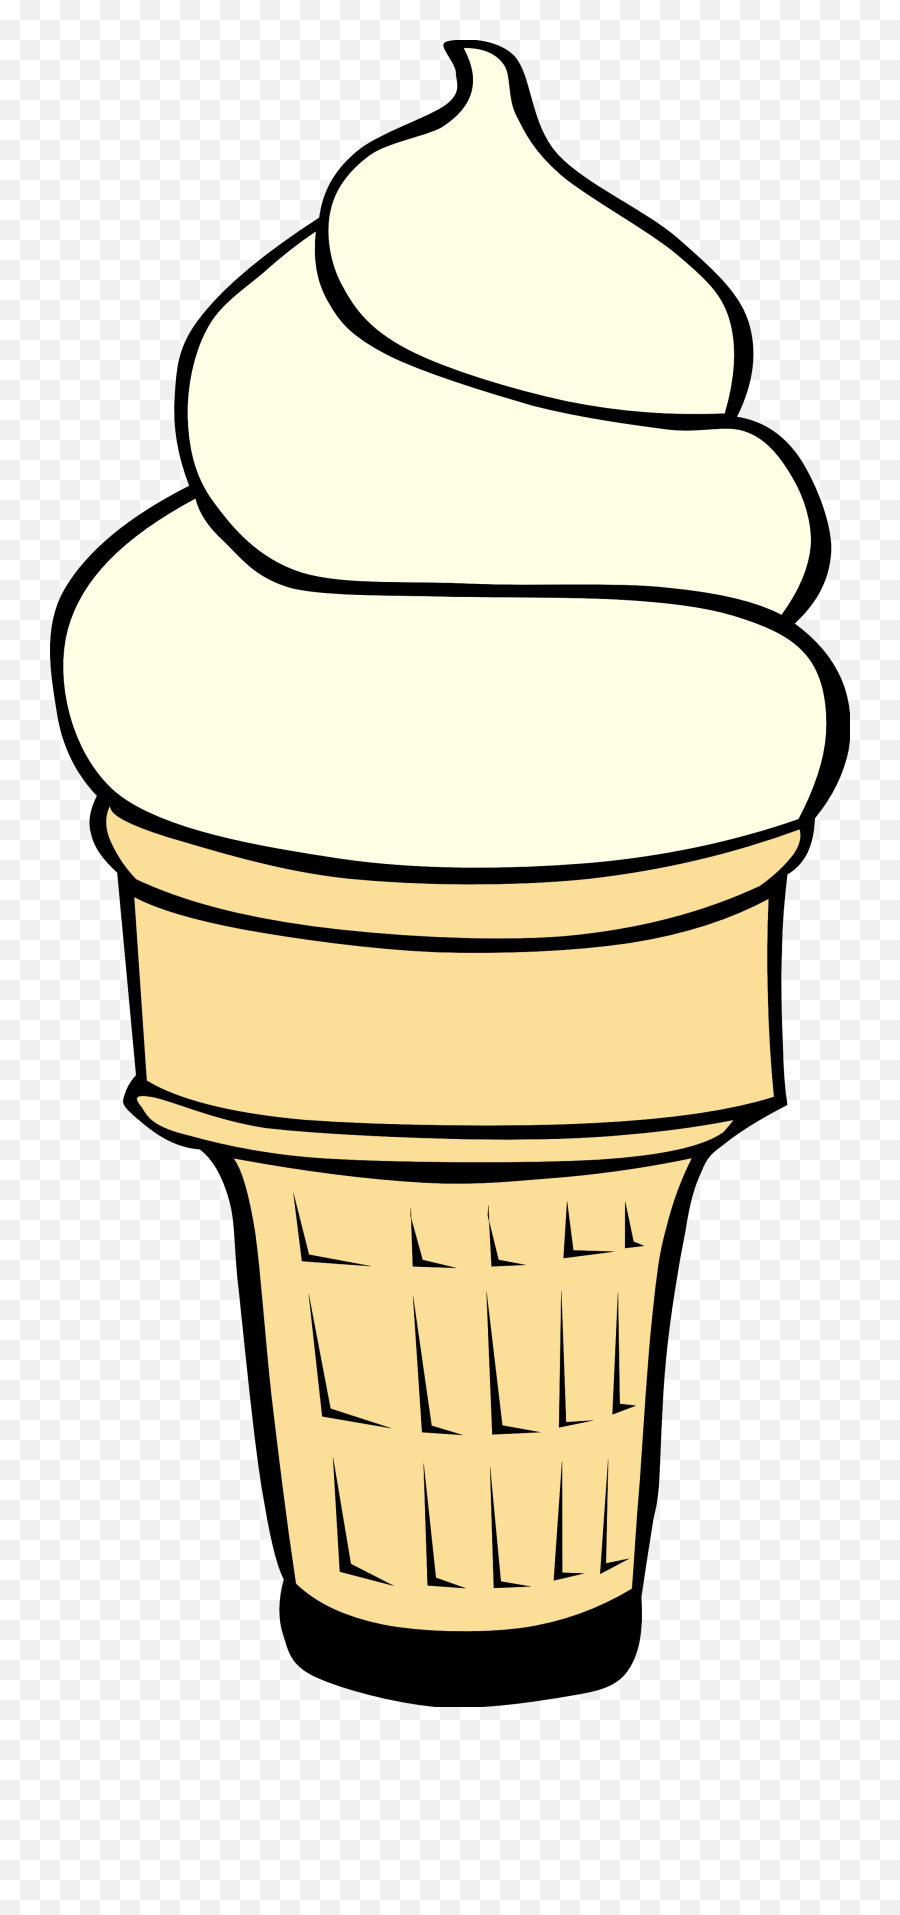 Ice Cream Cone Ice Creamne Clip Art Summer Clipart Ice Image - Transparent Background Vanilla Ice Cream Cone Clipart Emoji,Summer Clipart